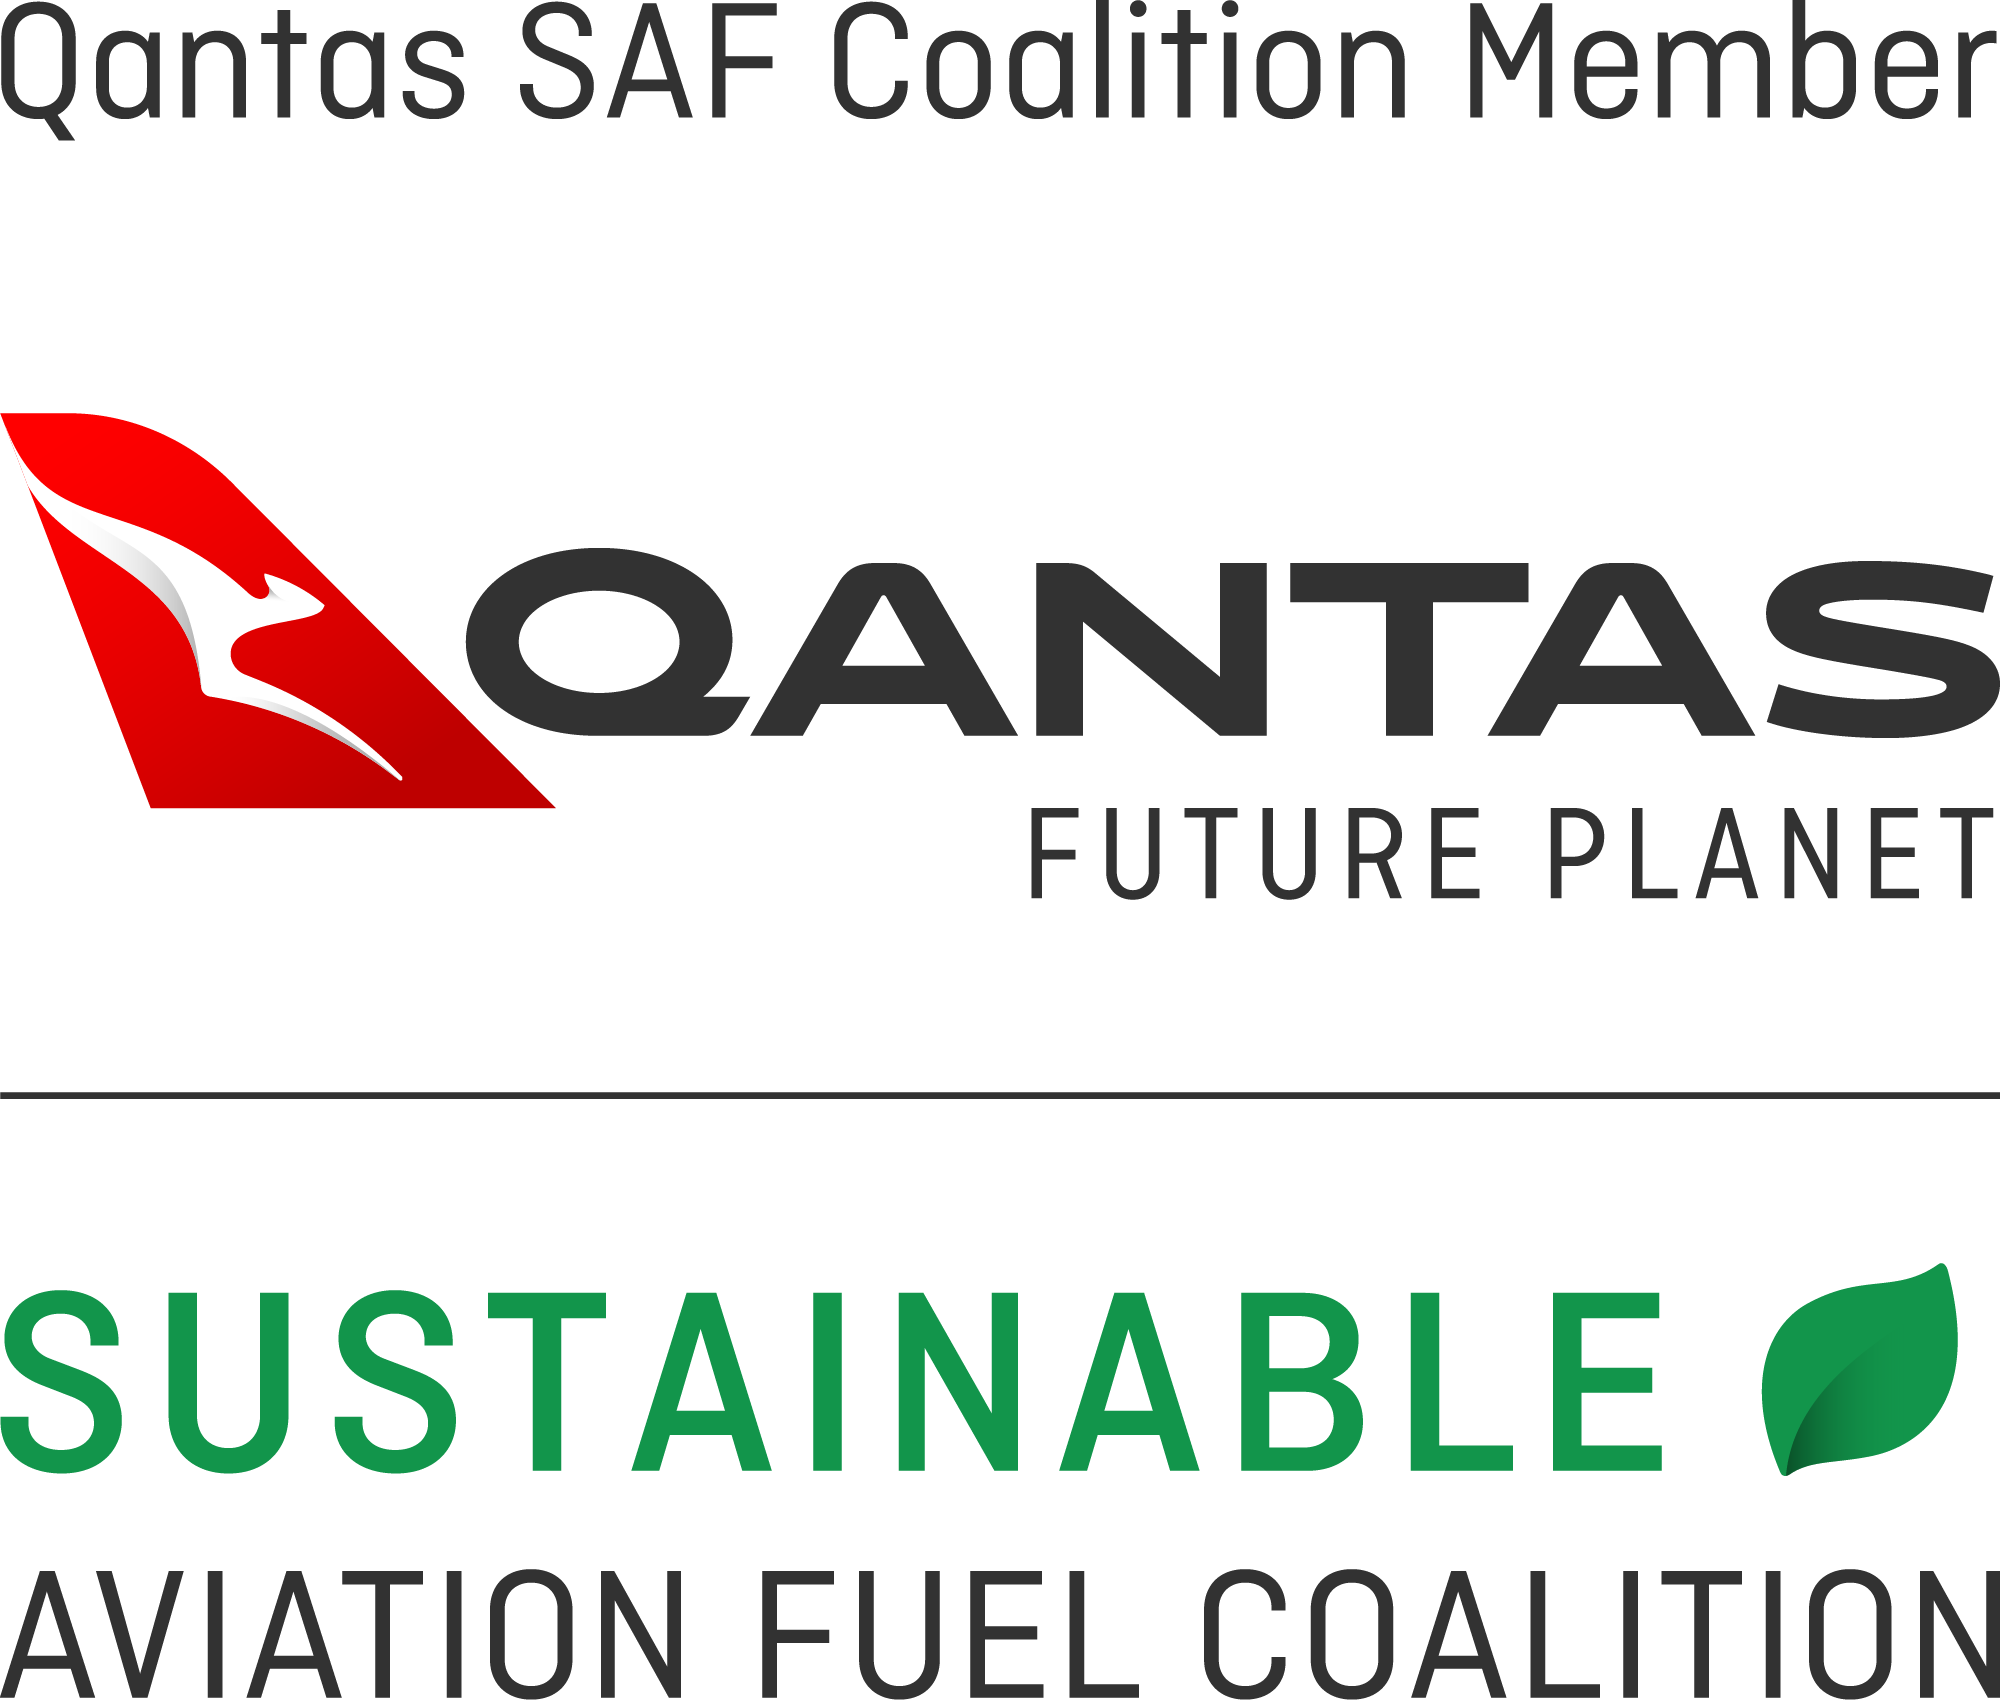 Qantas SAF Coalition Member